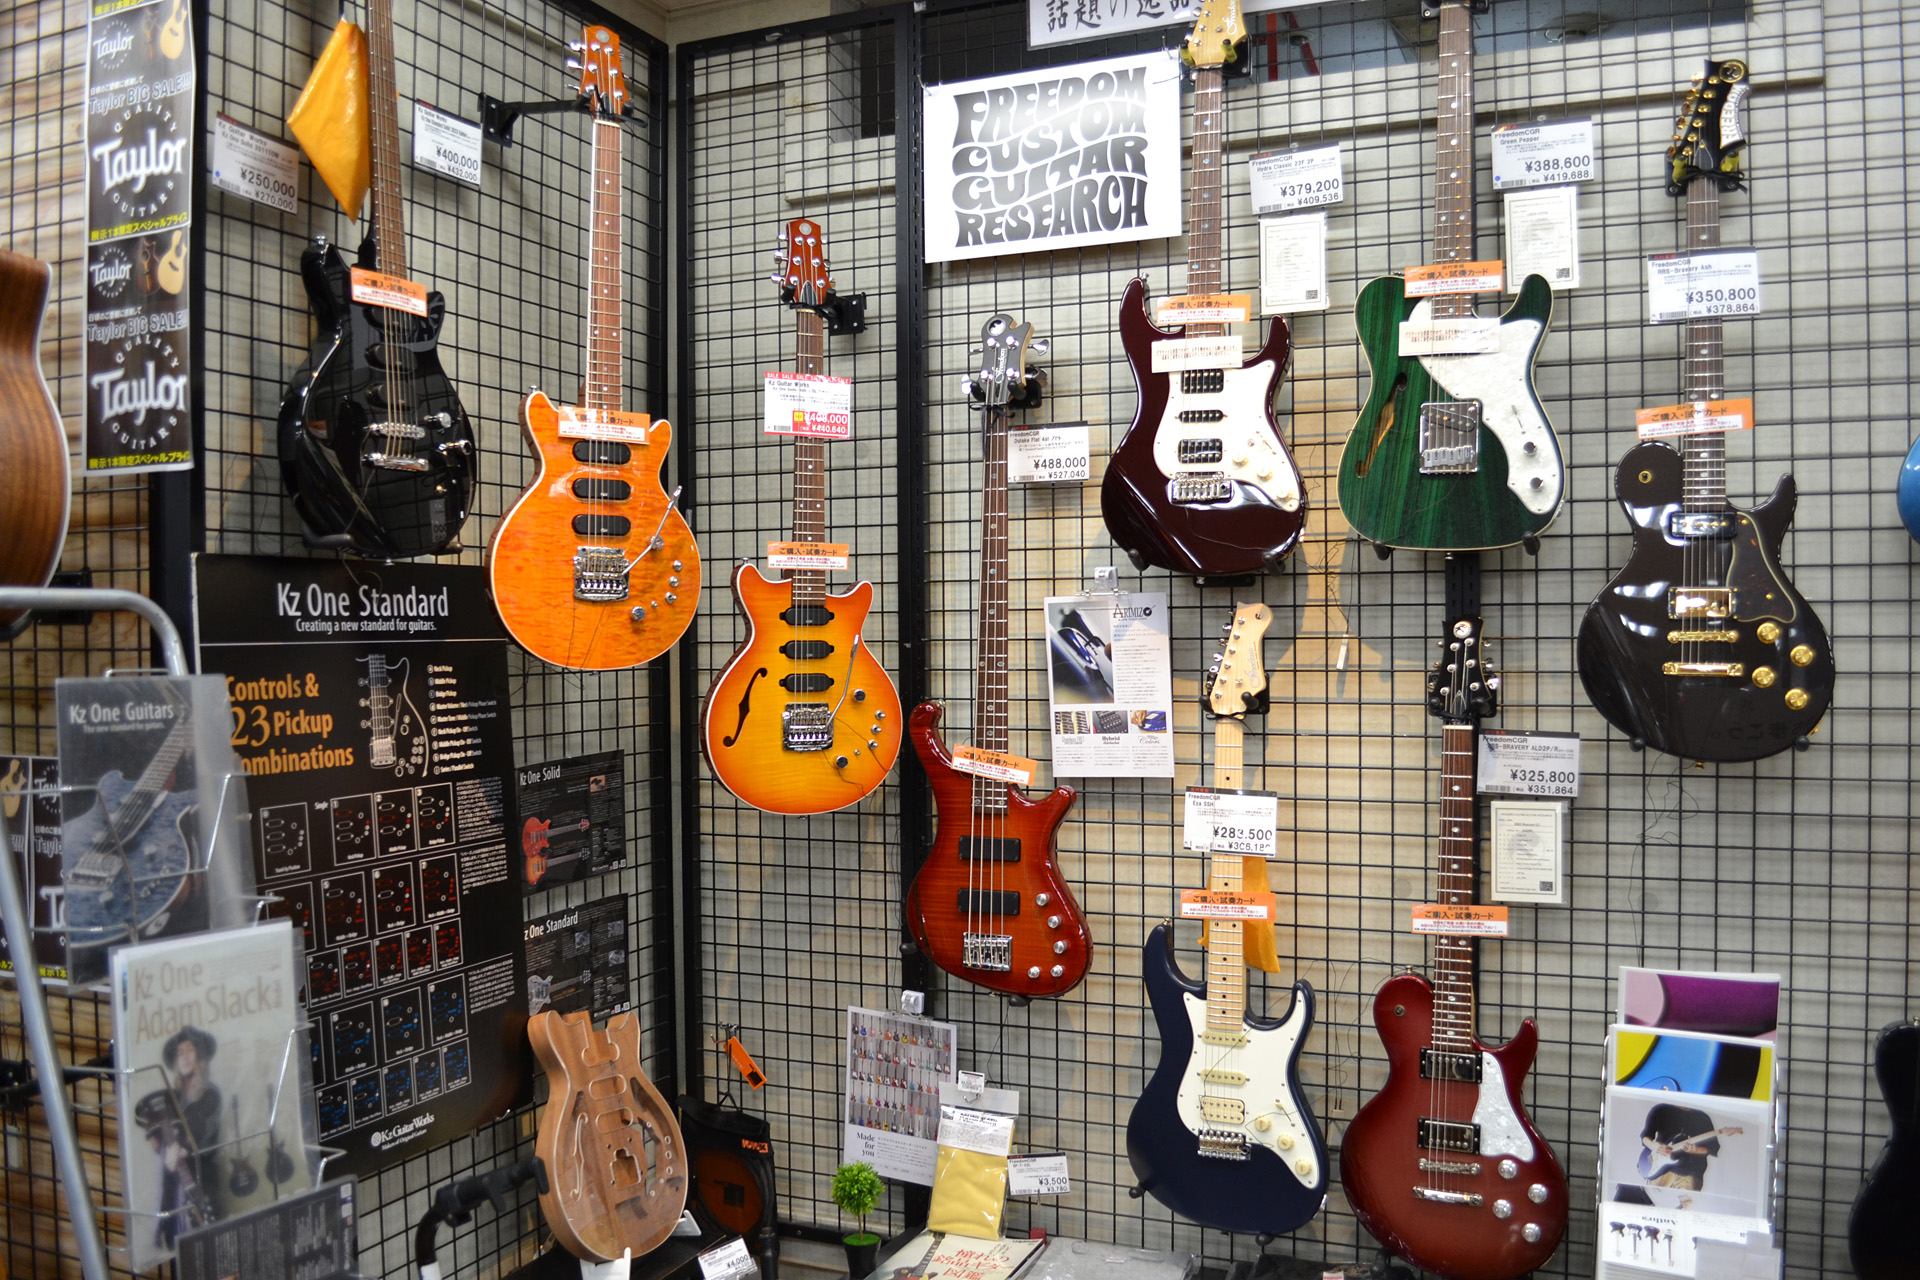 横須賀店 Freedom Custom Guitar Researchコーナーのご紹介！